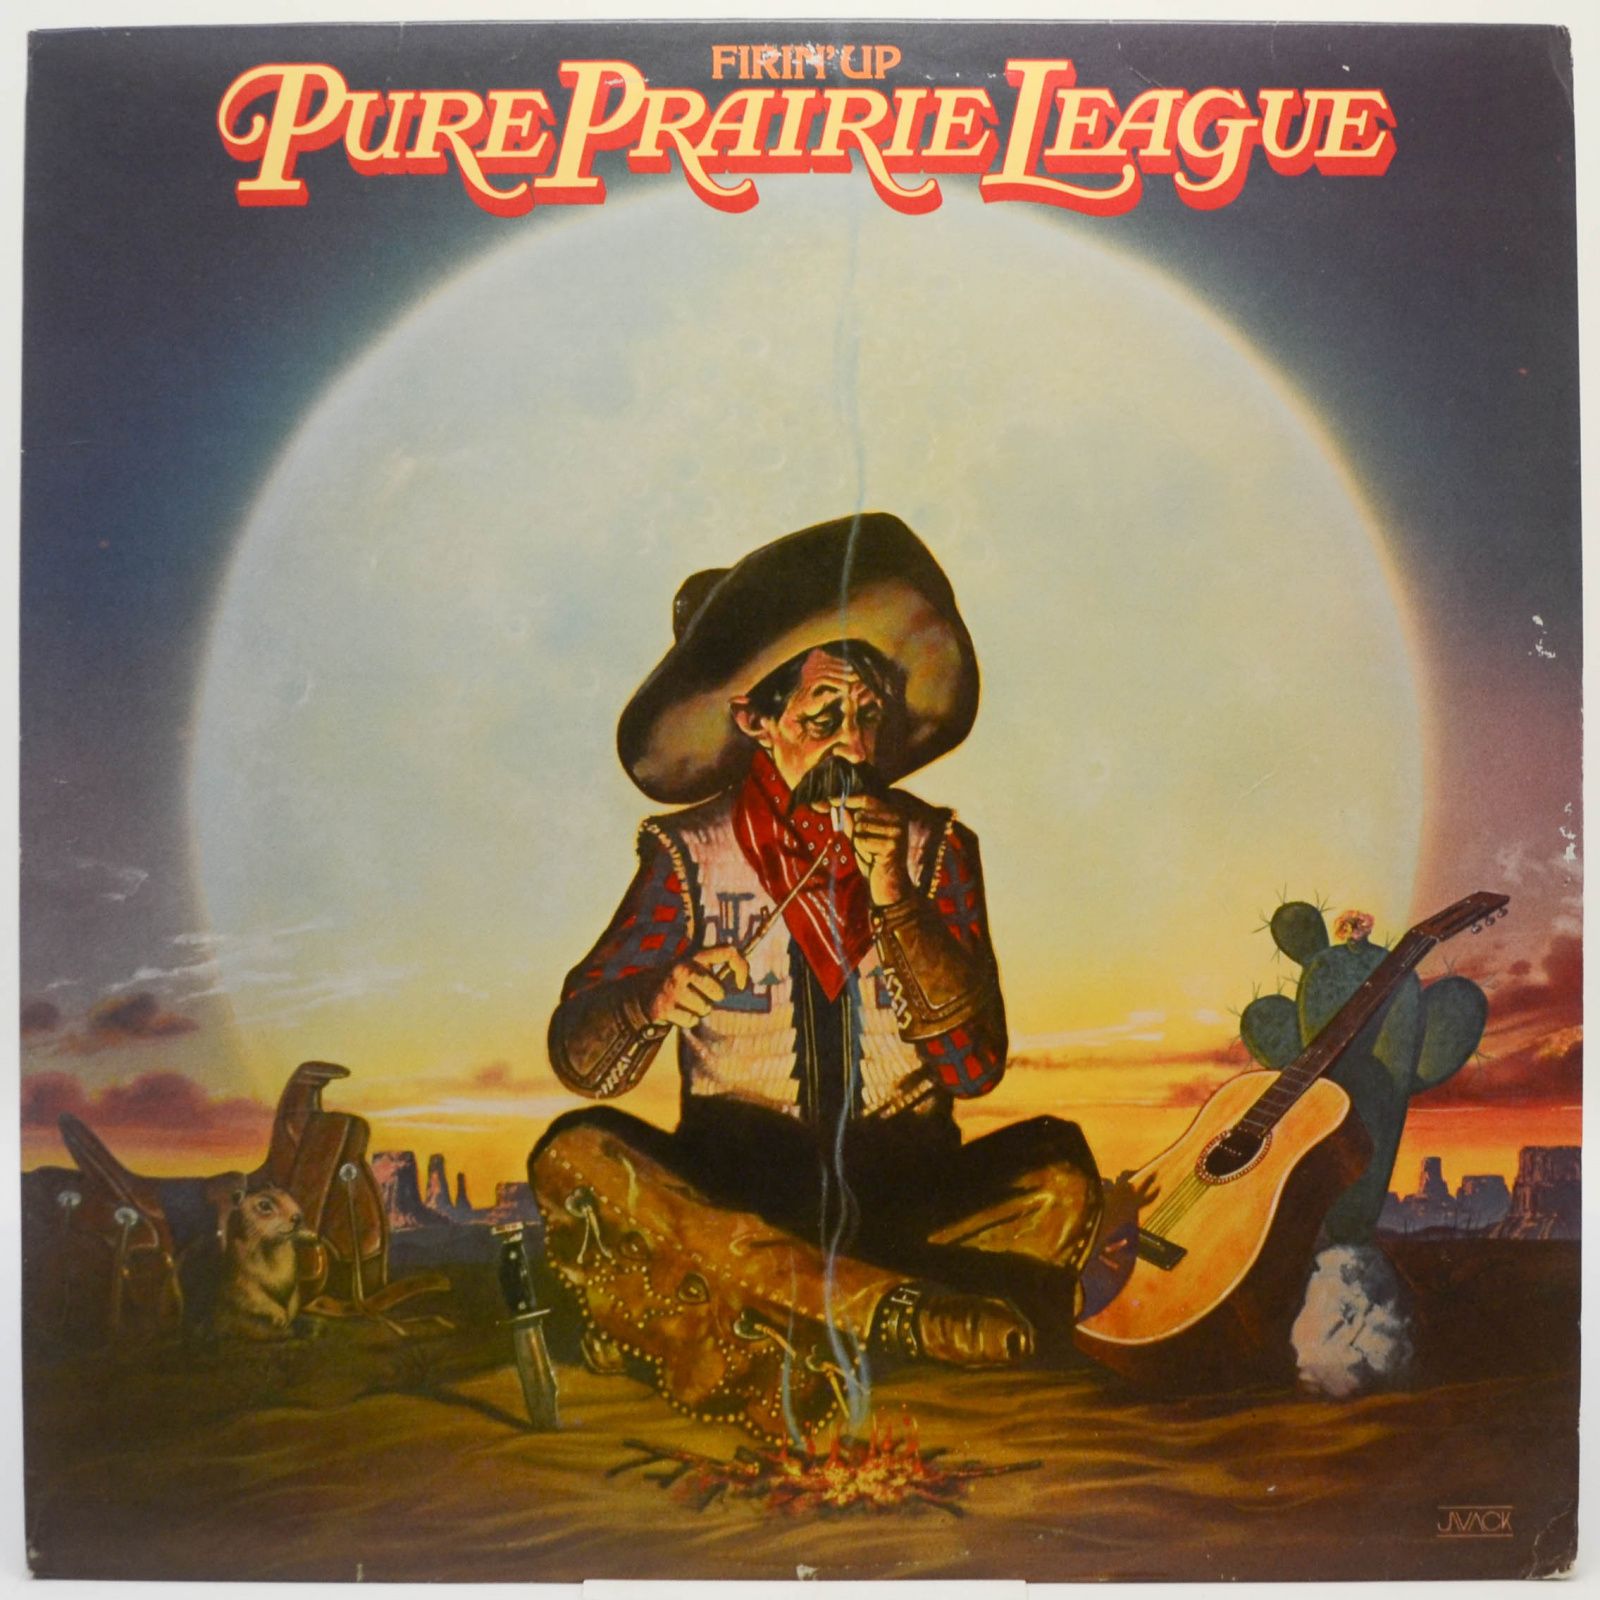 Pure Prairie League — Firin' Up, 1980